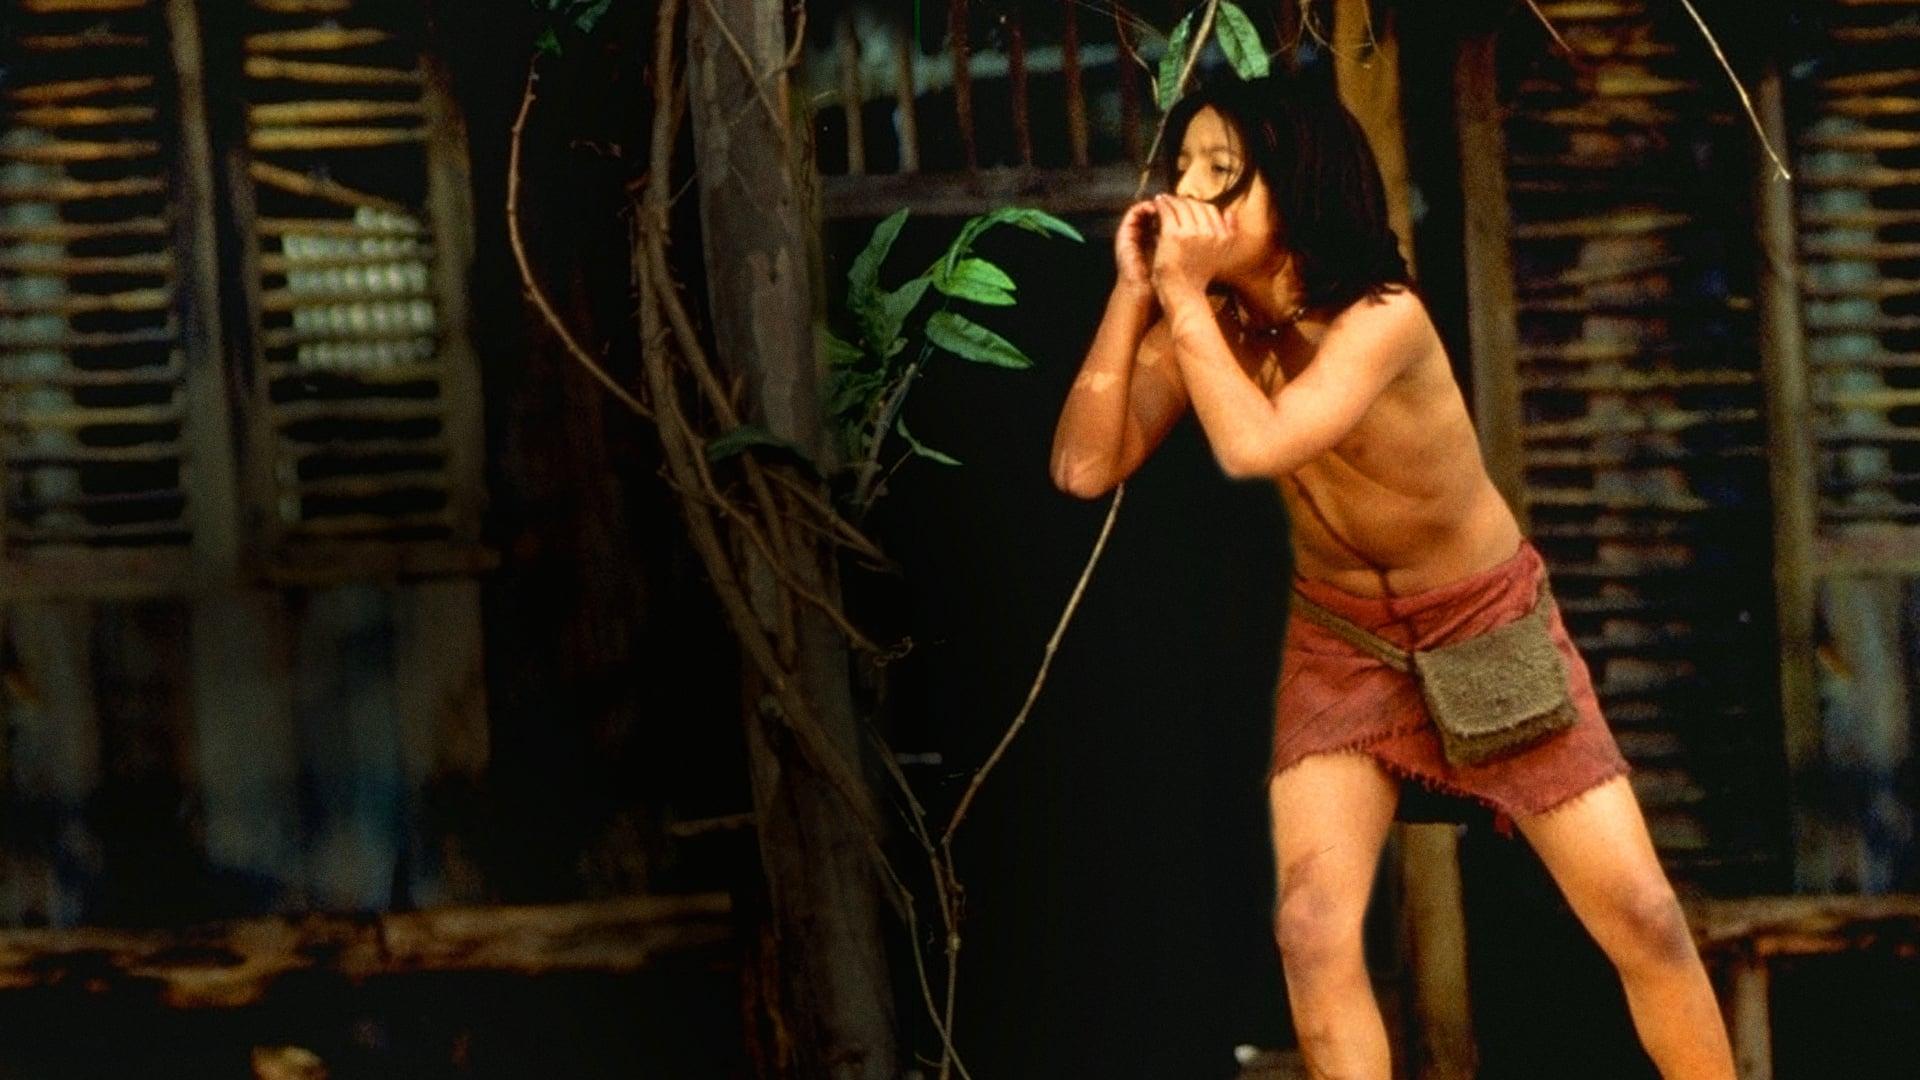 The Jungle Book: Mowgli's Story backdrop